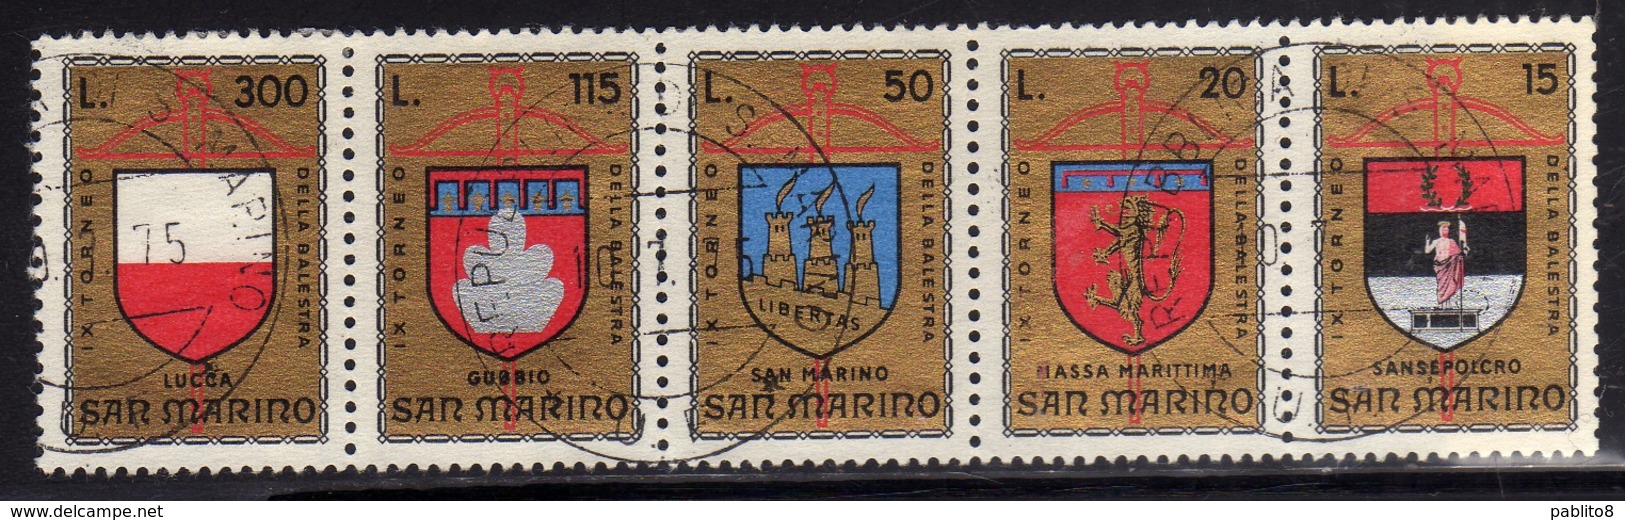 REPUBBLICA DI SAN MARINO 1974 TORNEO DELLA BALESTRA STRISCIA SERIE COMPLETA STRIP COMPLETE SET USATA USED OBLITERE' - Used Stamps